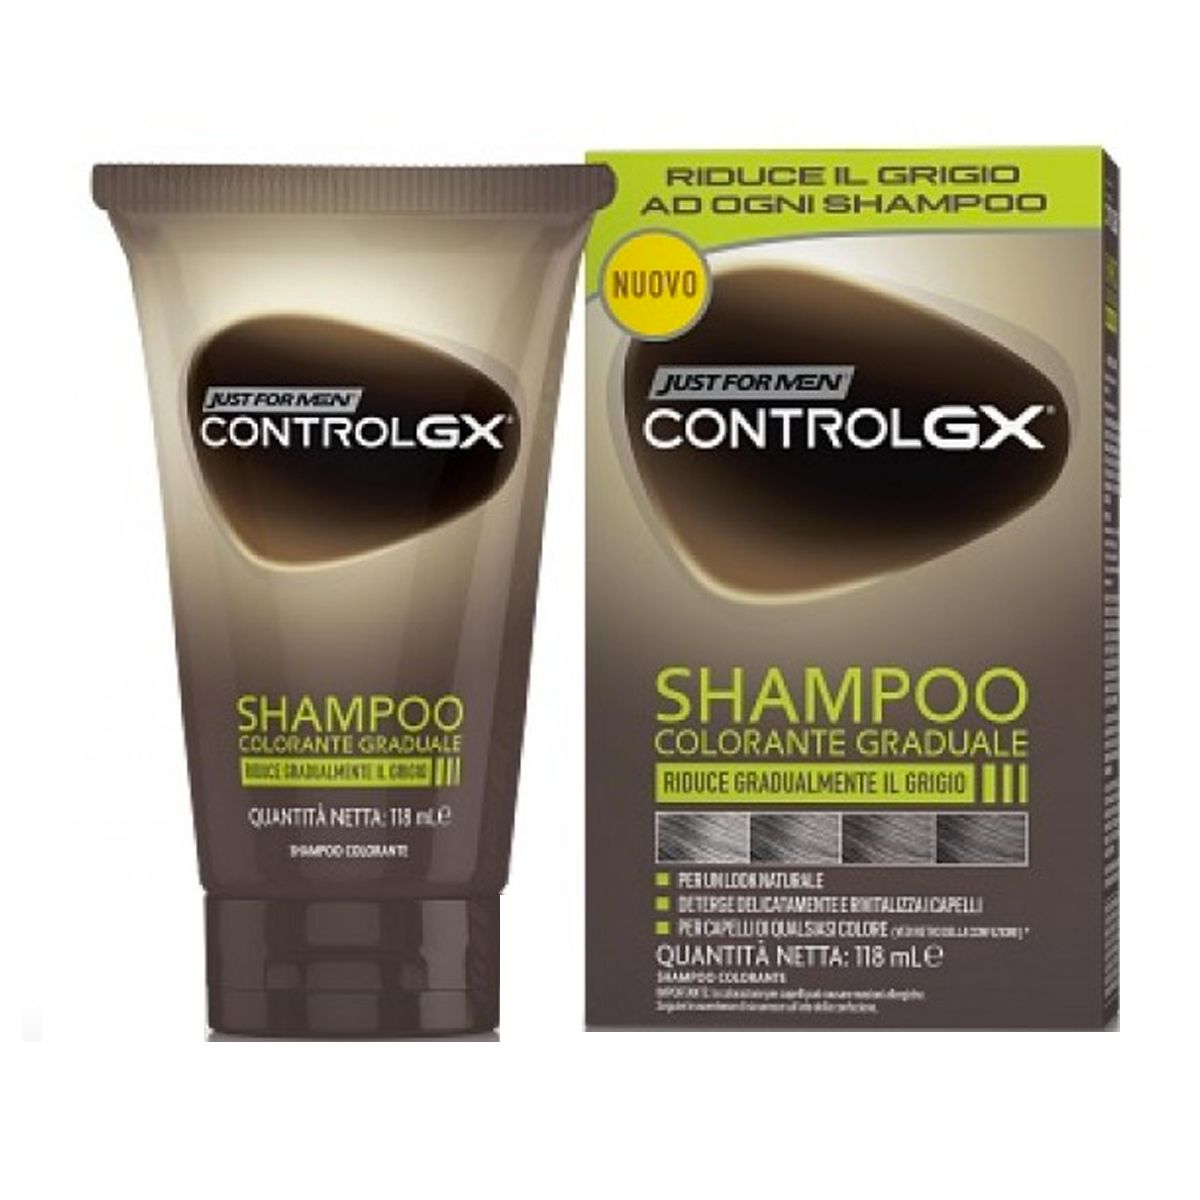 combe just for men control gx shampoo colorante graduale 118ml